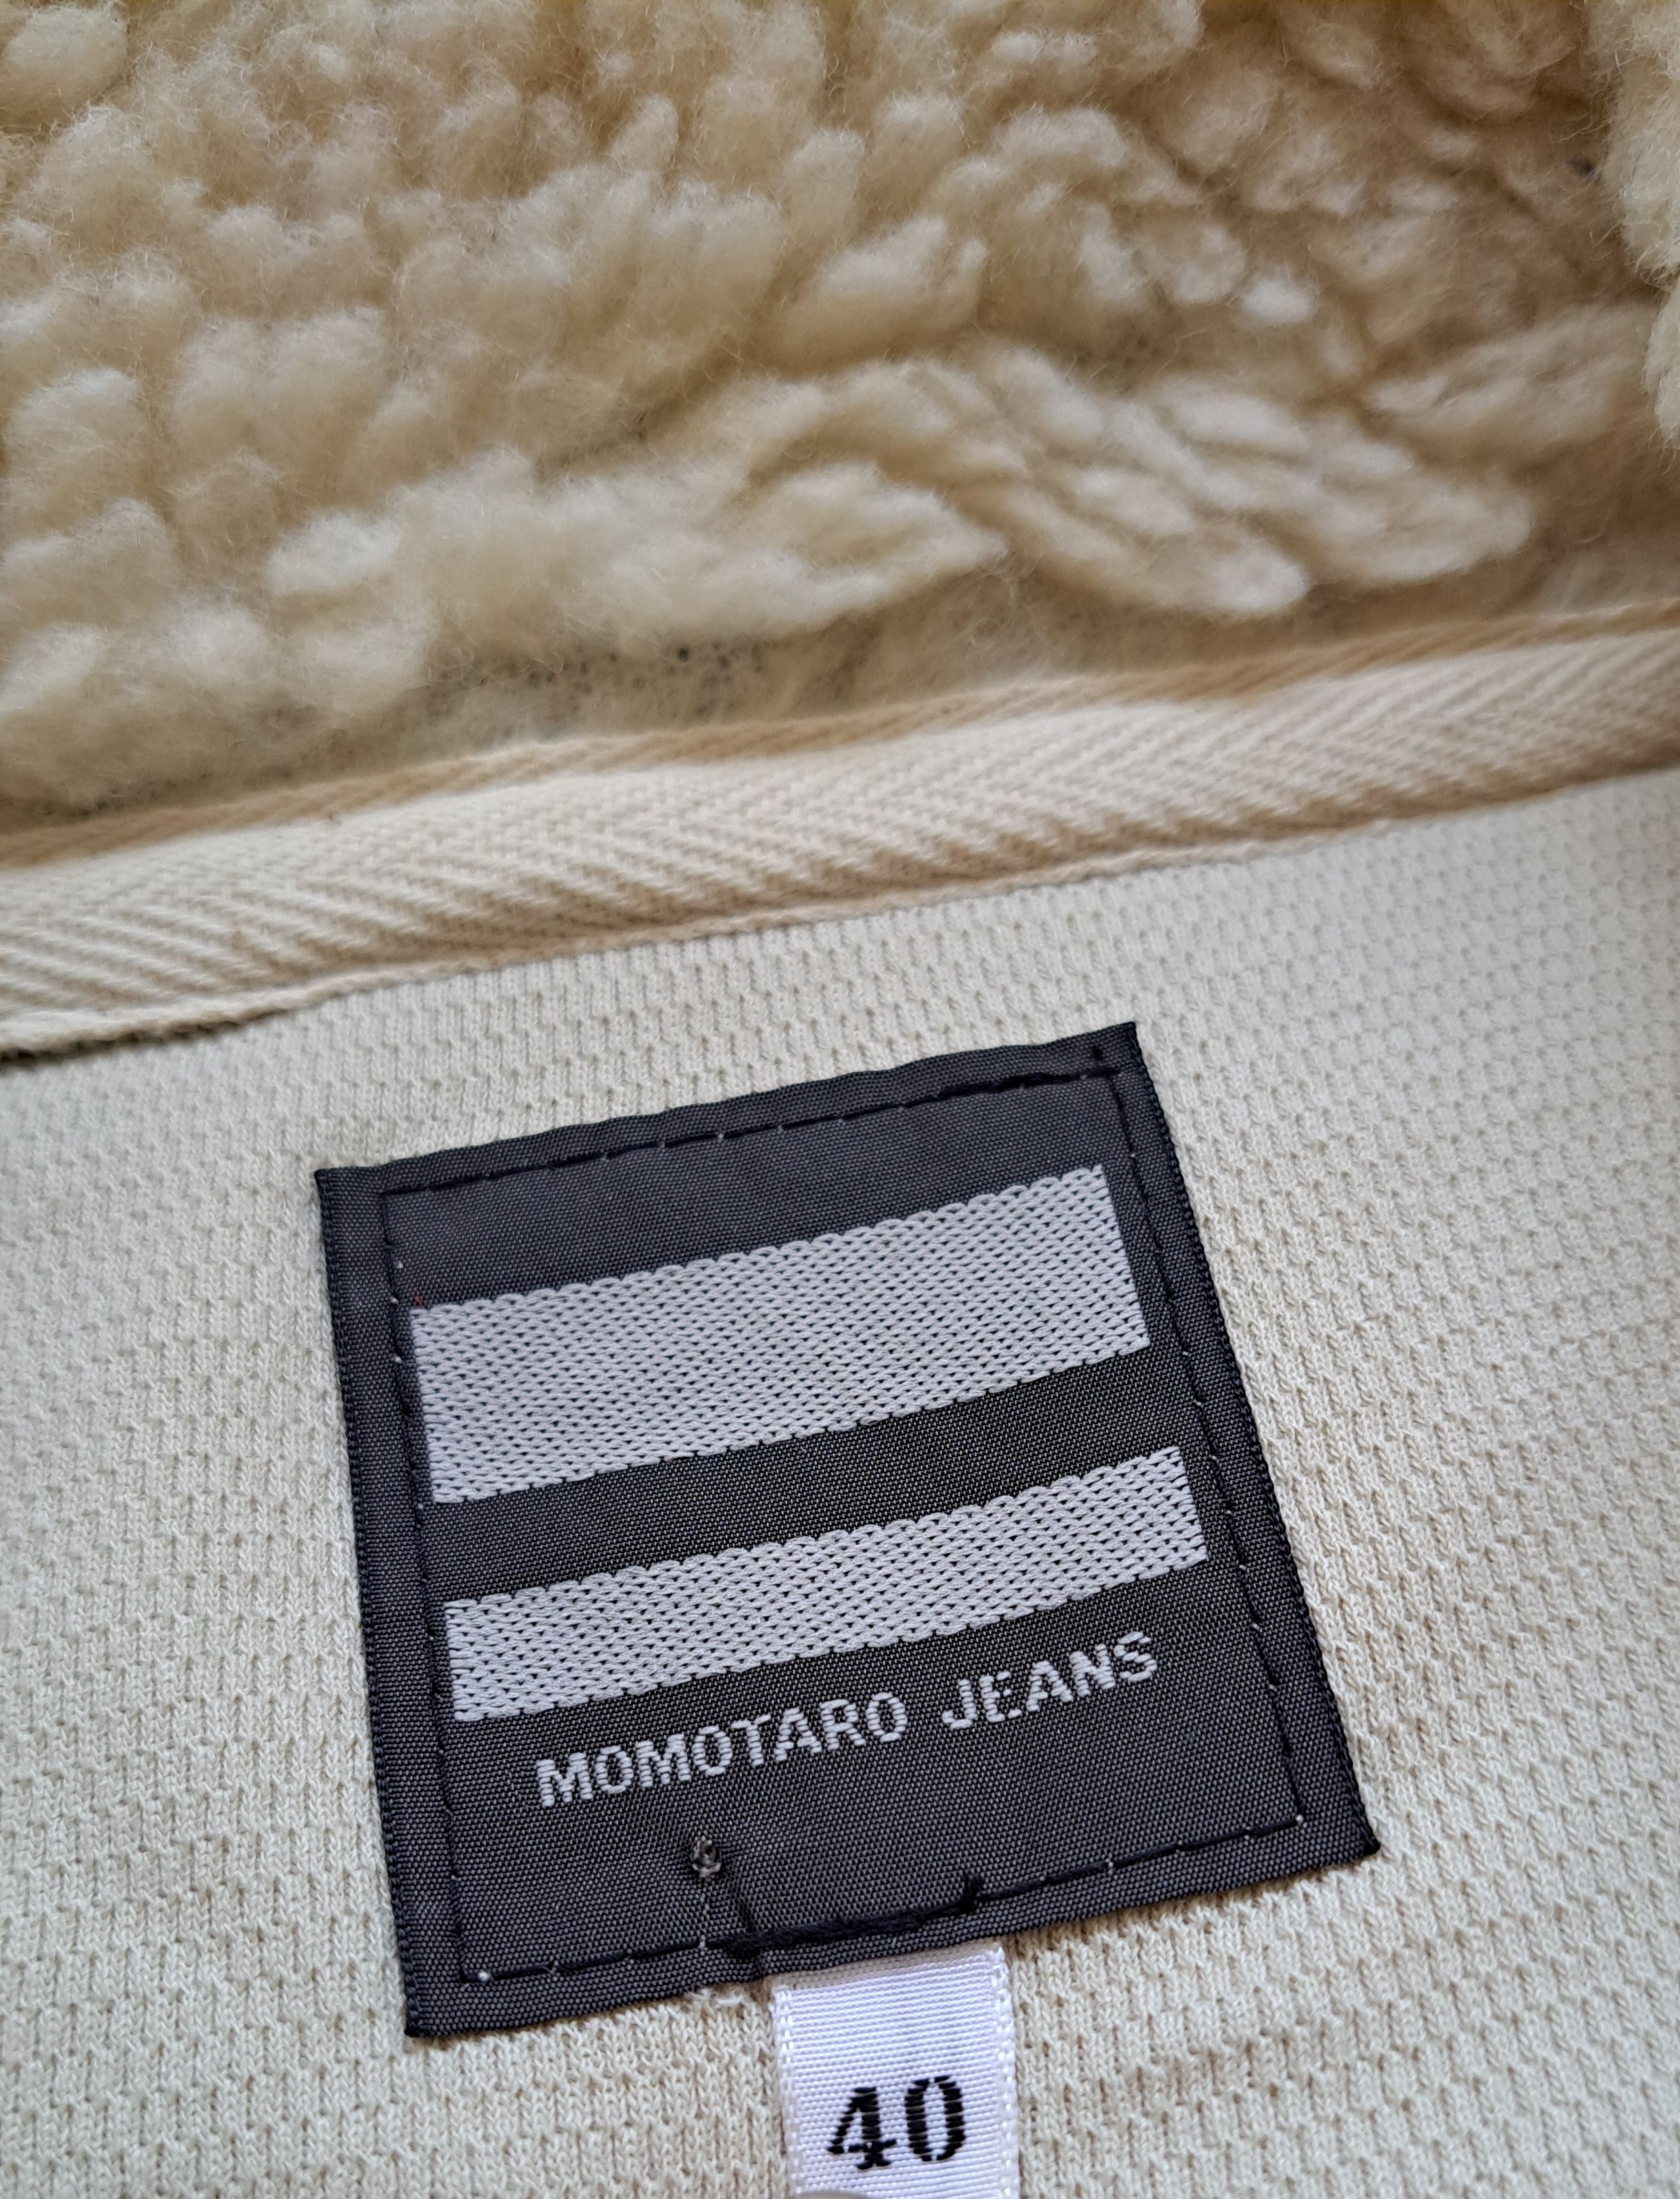 Momotaro Momotaro Deep Pile Jacket Size US L / EU 52-54 / 3 - 6 Preview